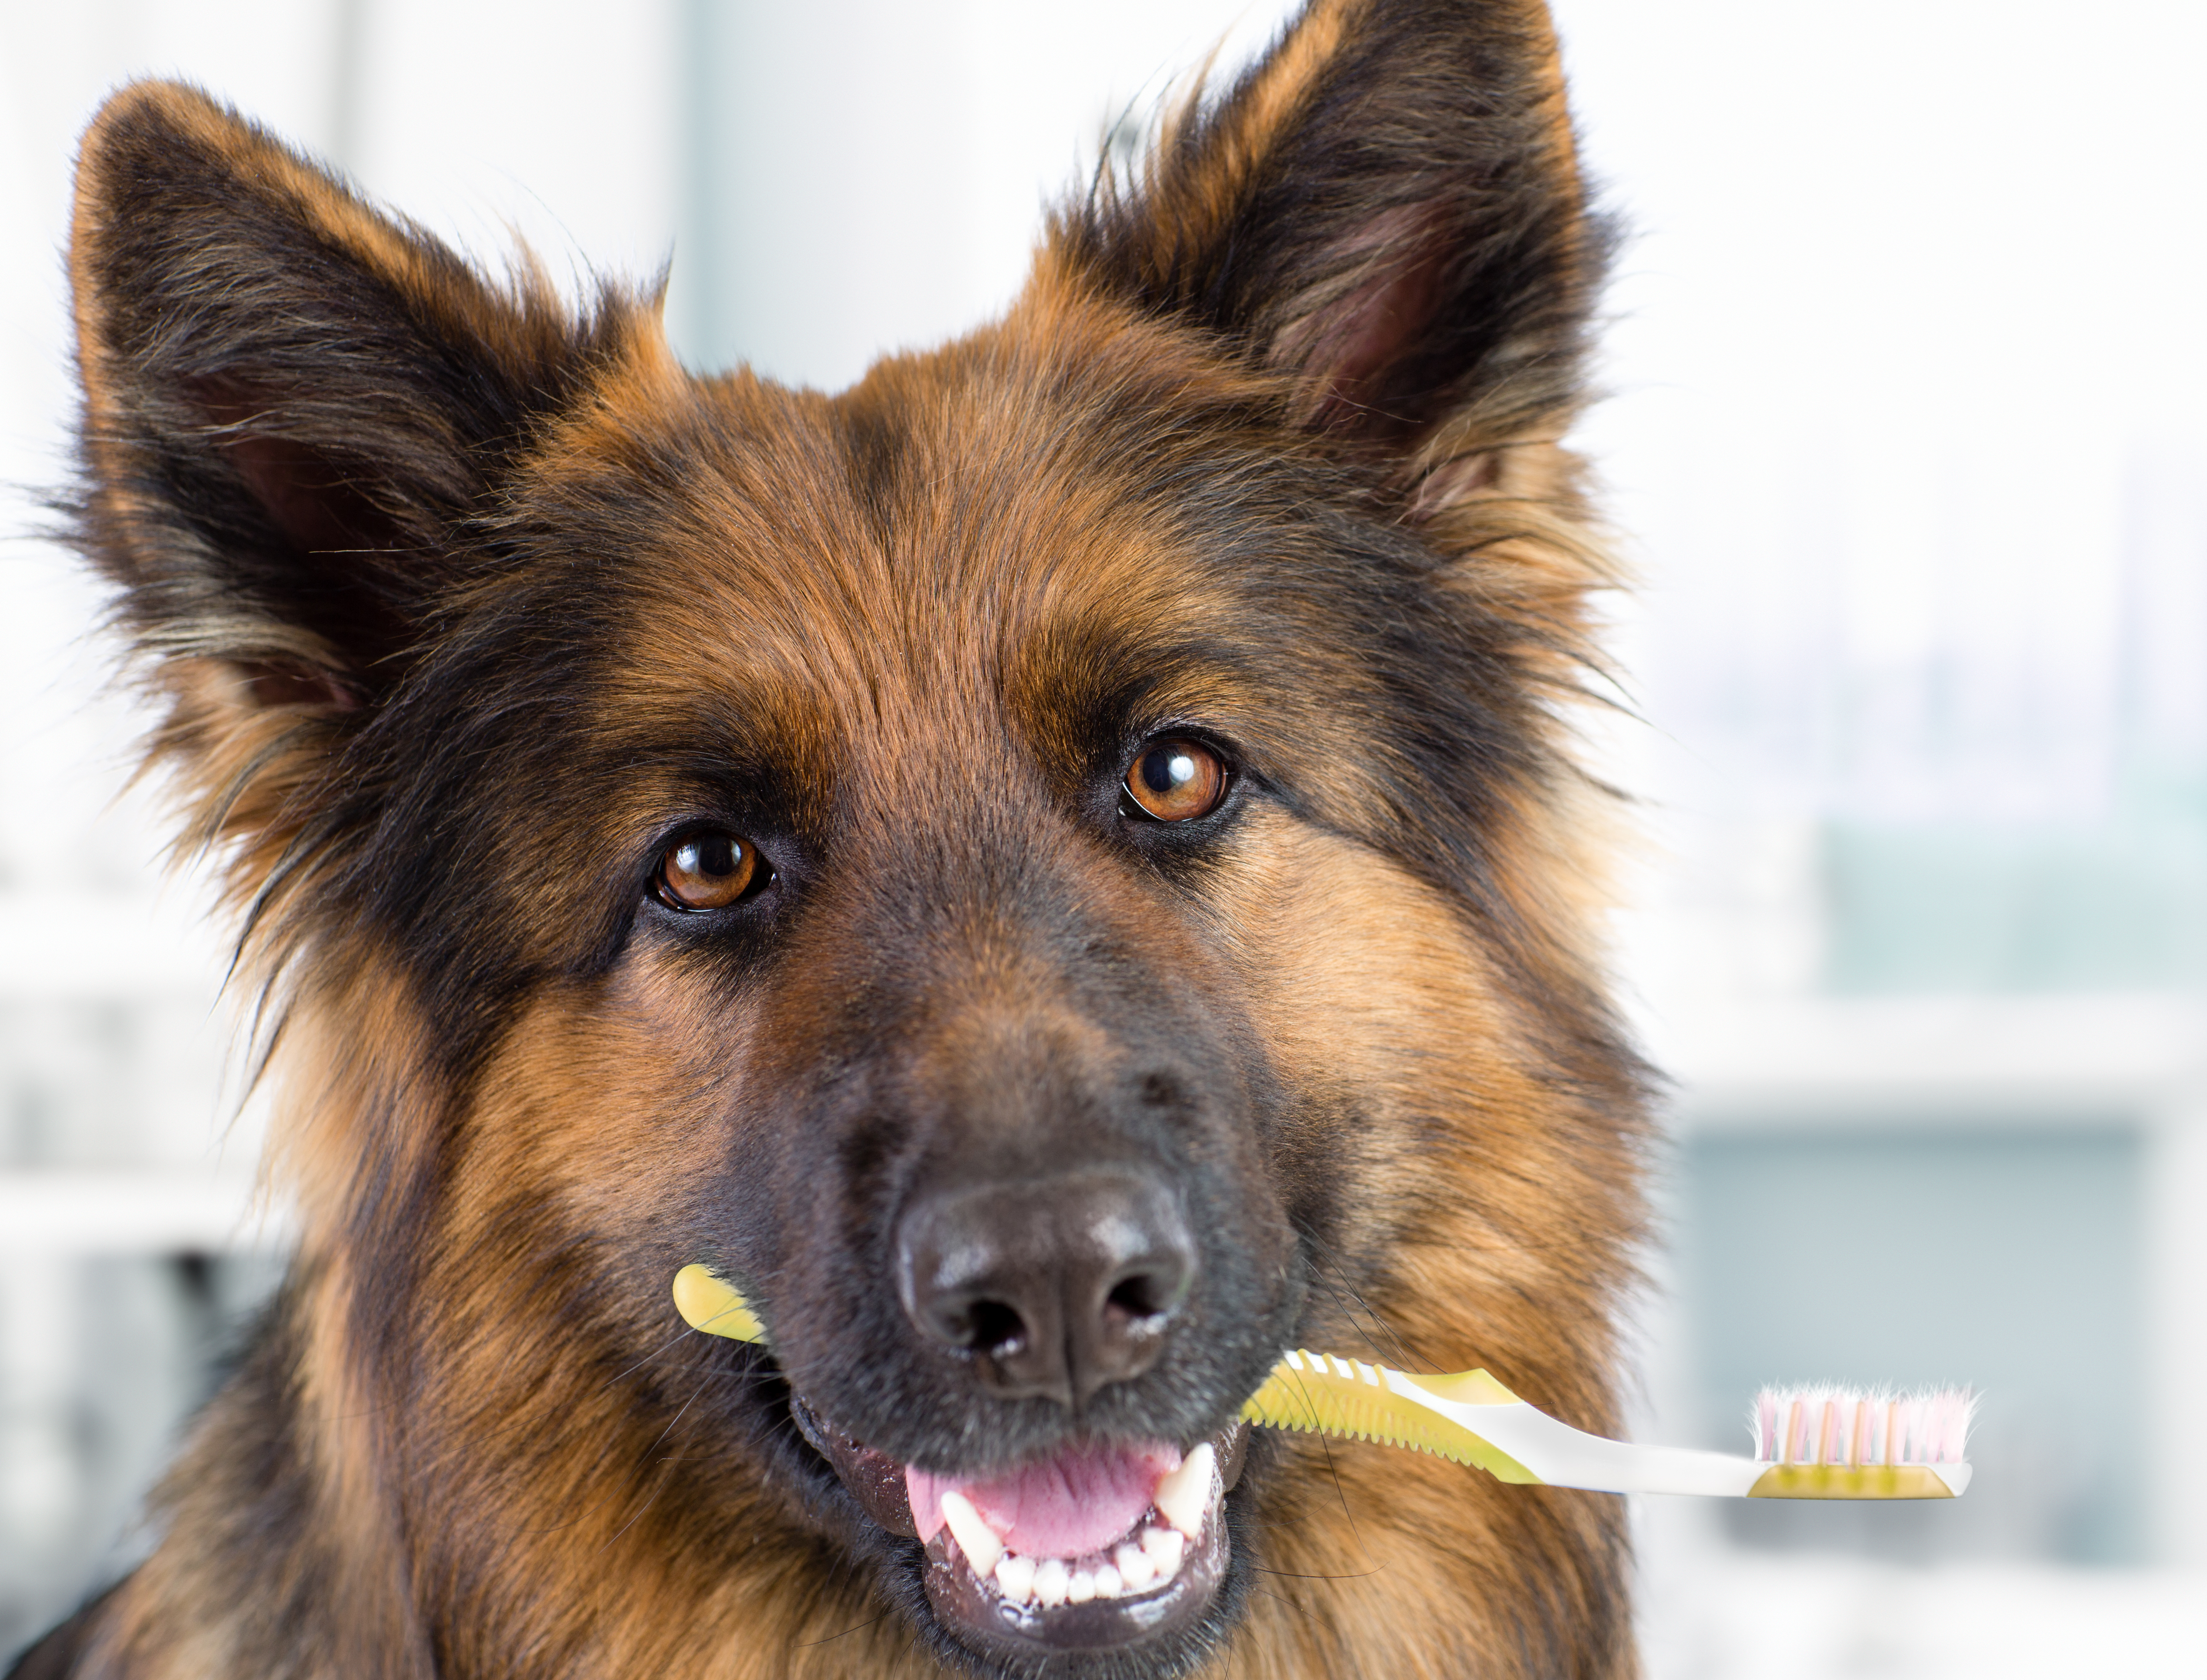 Muchos perros muestran signos de enfermedad en las encías debido a que sus dueños no le prestan la atención a su salud bucal. El mal aliento suele ser la primera señal de que algo no está bien. (Foto Prensa Libre: Servicios)